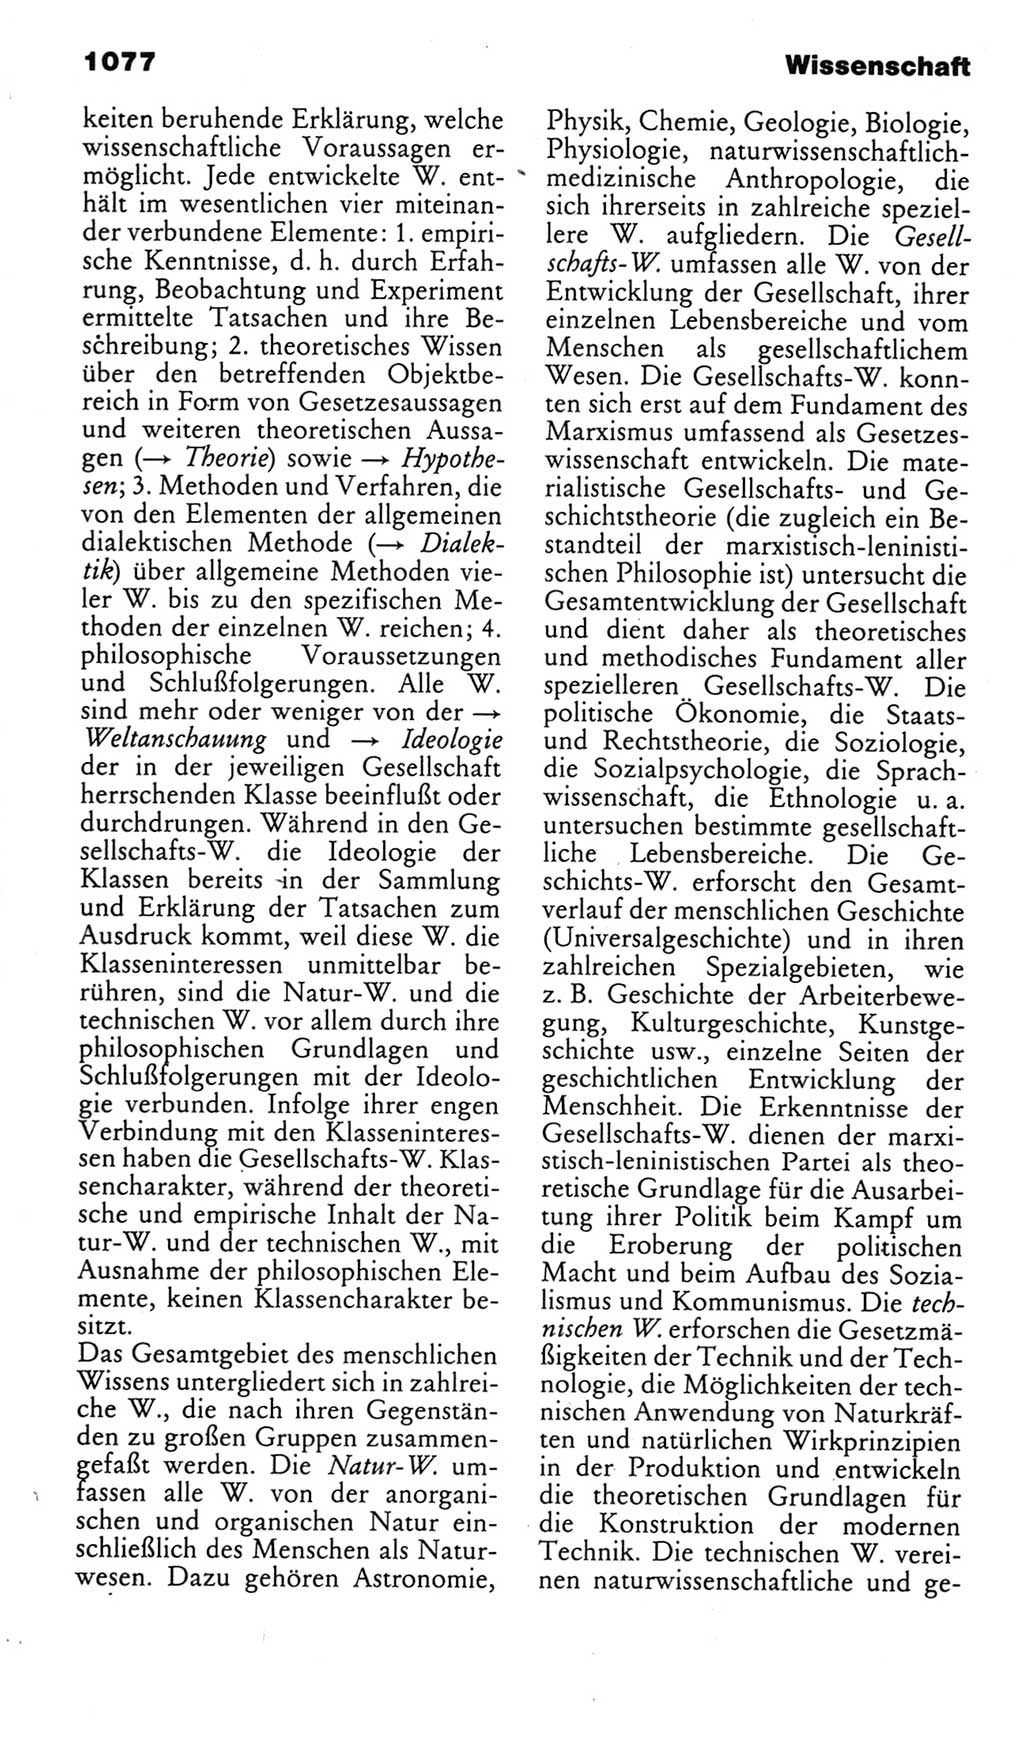 Kleines politisches Wörterbuch [Deutsche Demokratische Republik (DDR)] 1985, Seite 1077 (Kl. pol. Wb. DDR 1985, S. 1077)